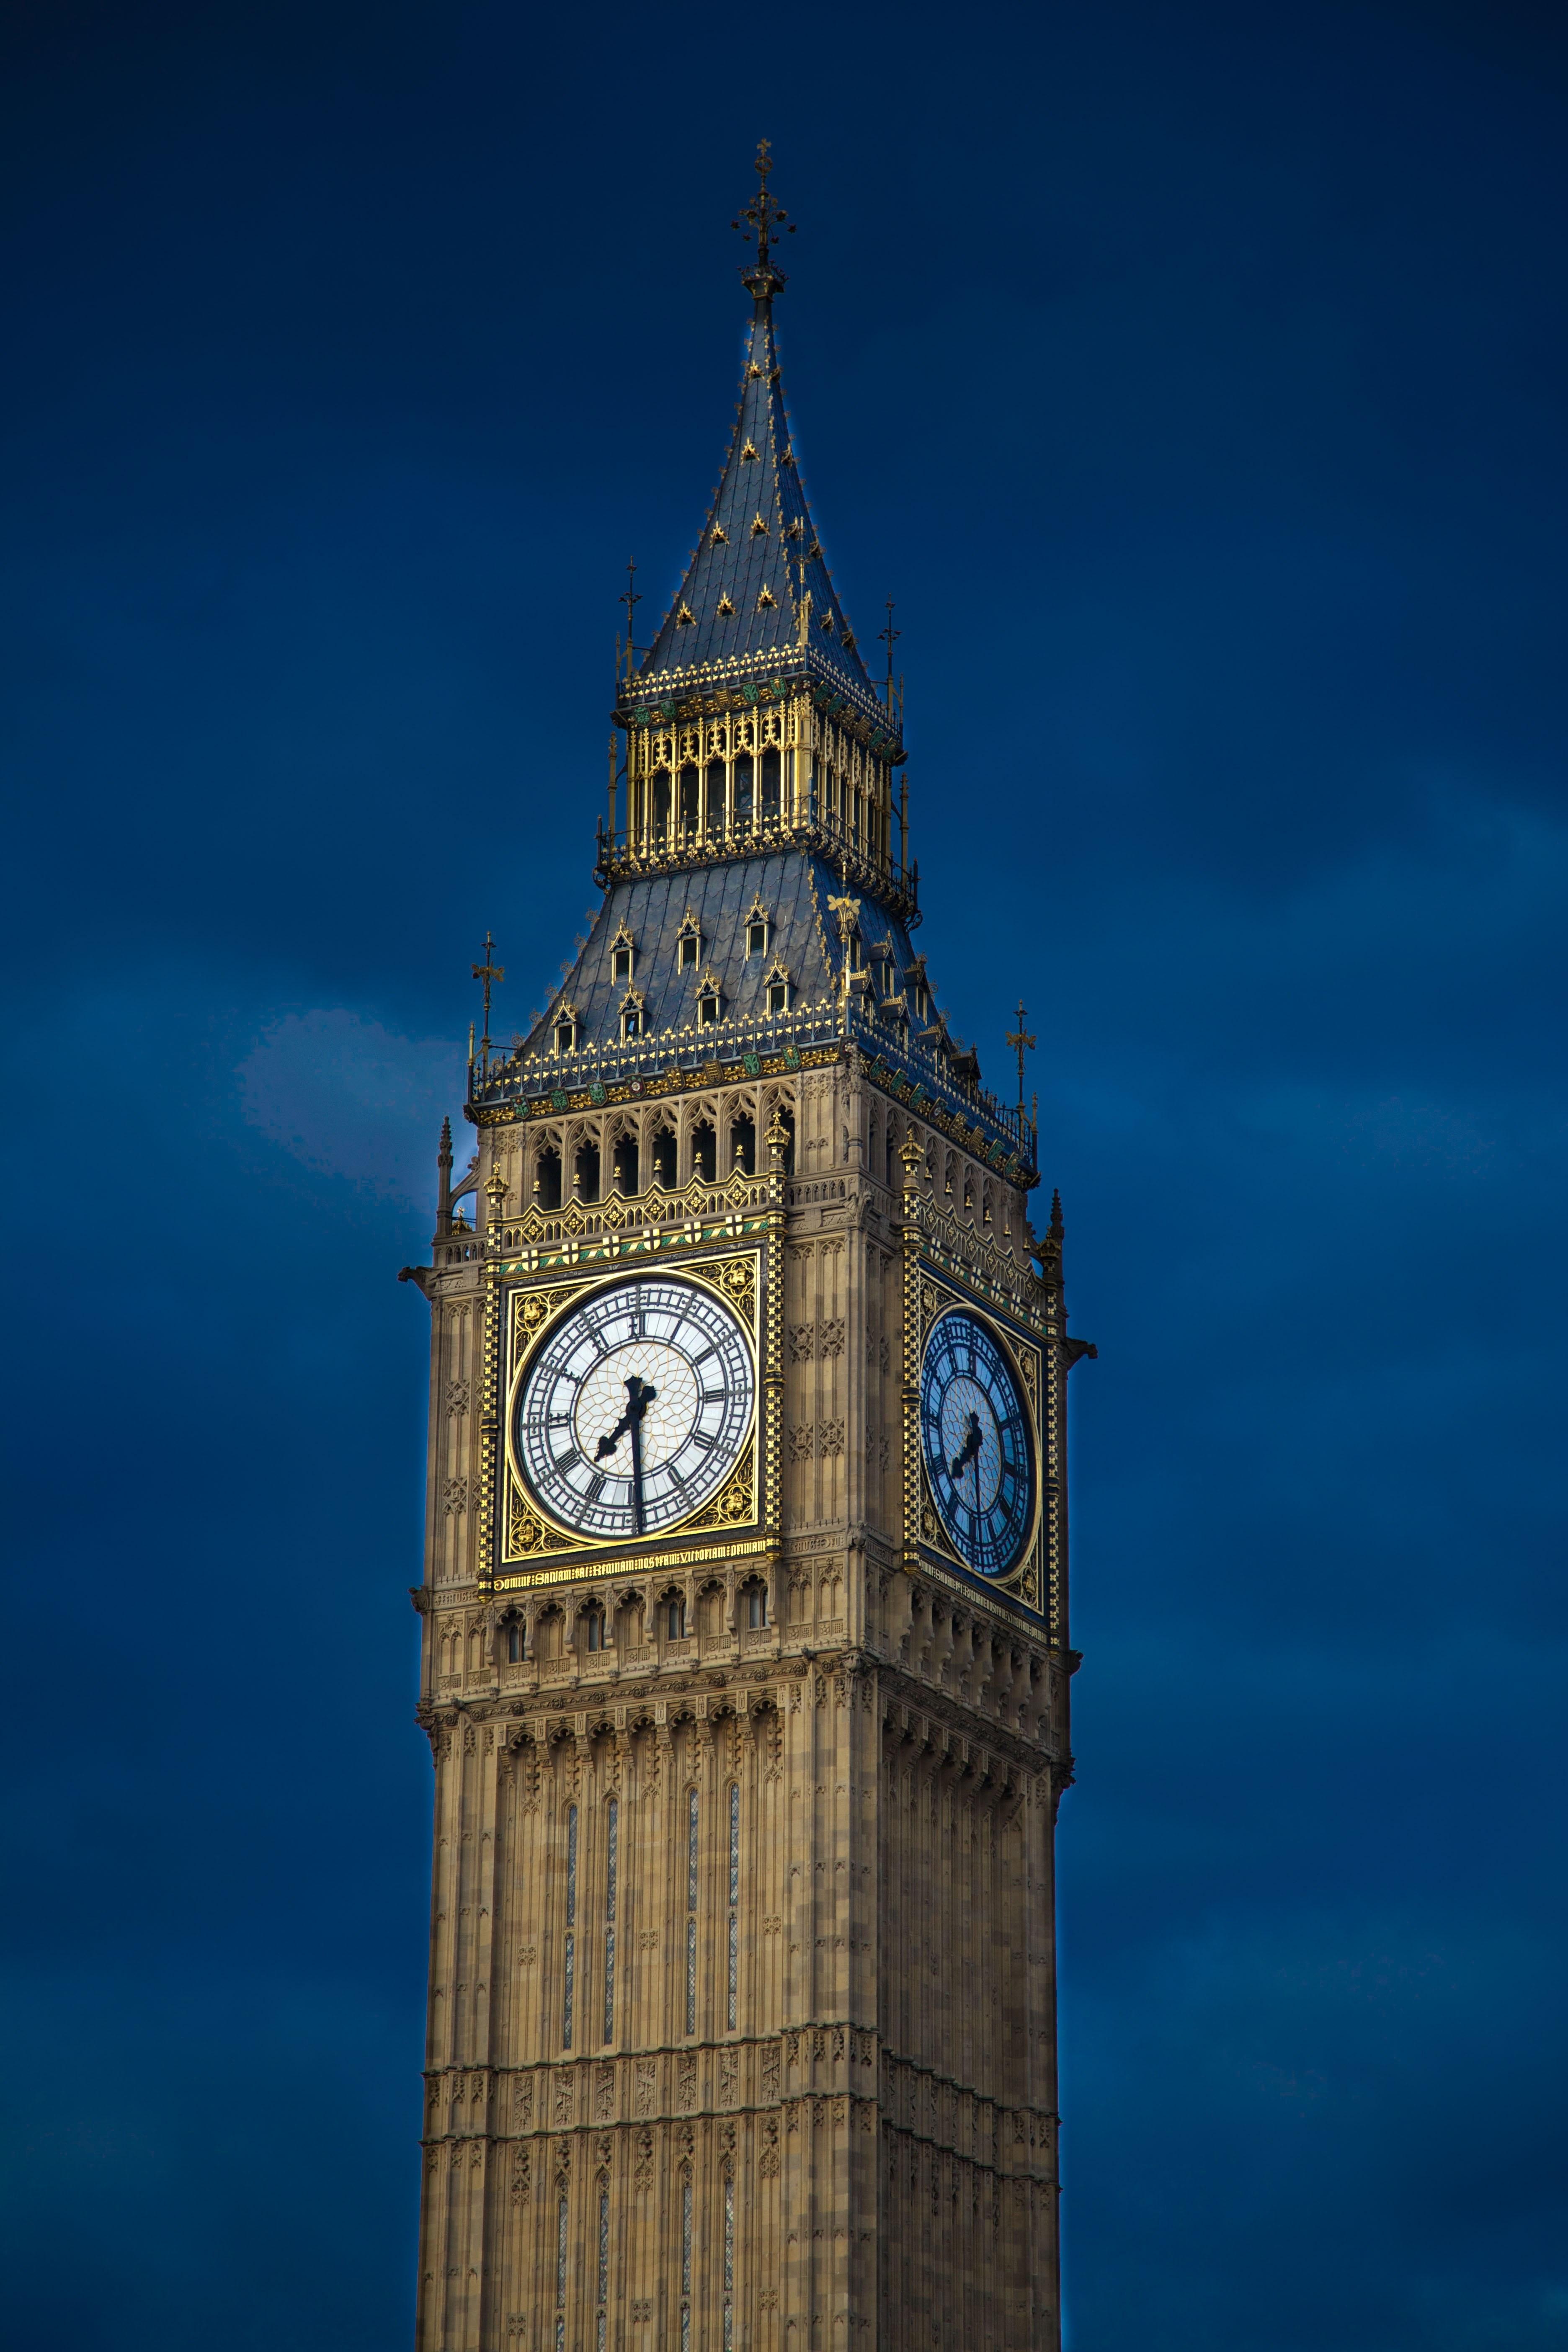 Игра биг бен. Часовая башня Вестминстерского дворца. Башня Биг Бен в Лондоне. Биг-Бен (башня Елизаветы). Часовая башня Биг Бен.